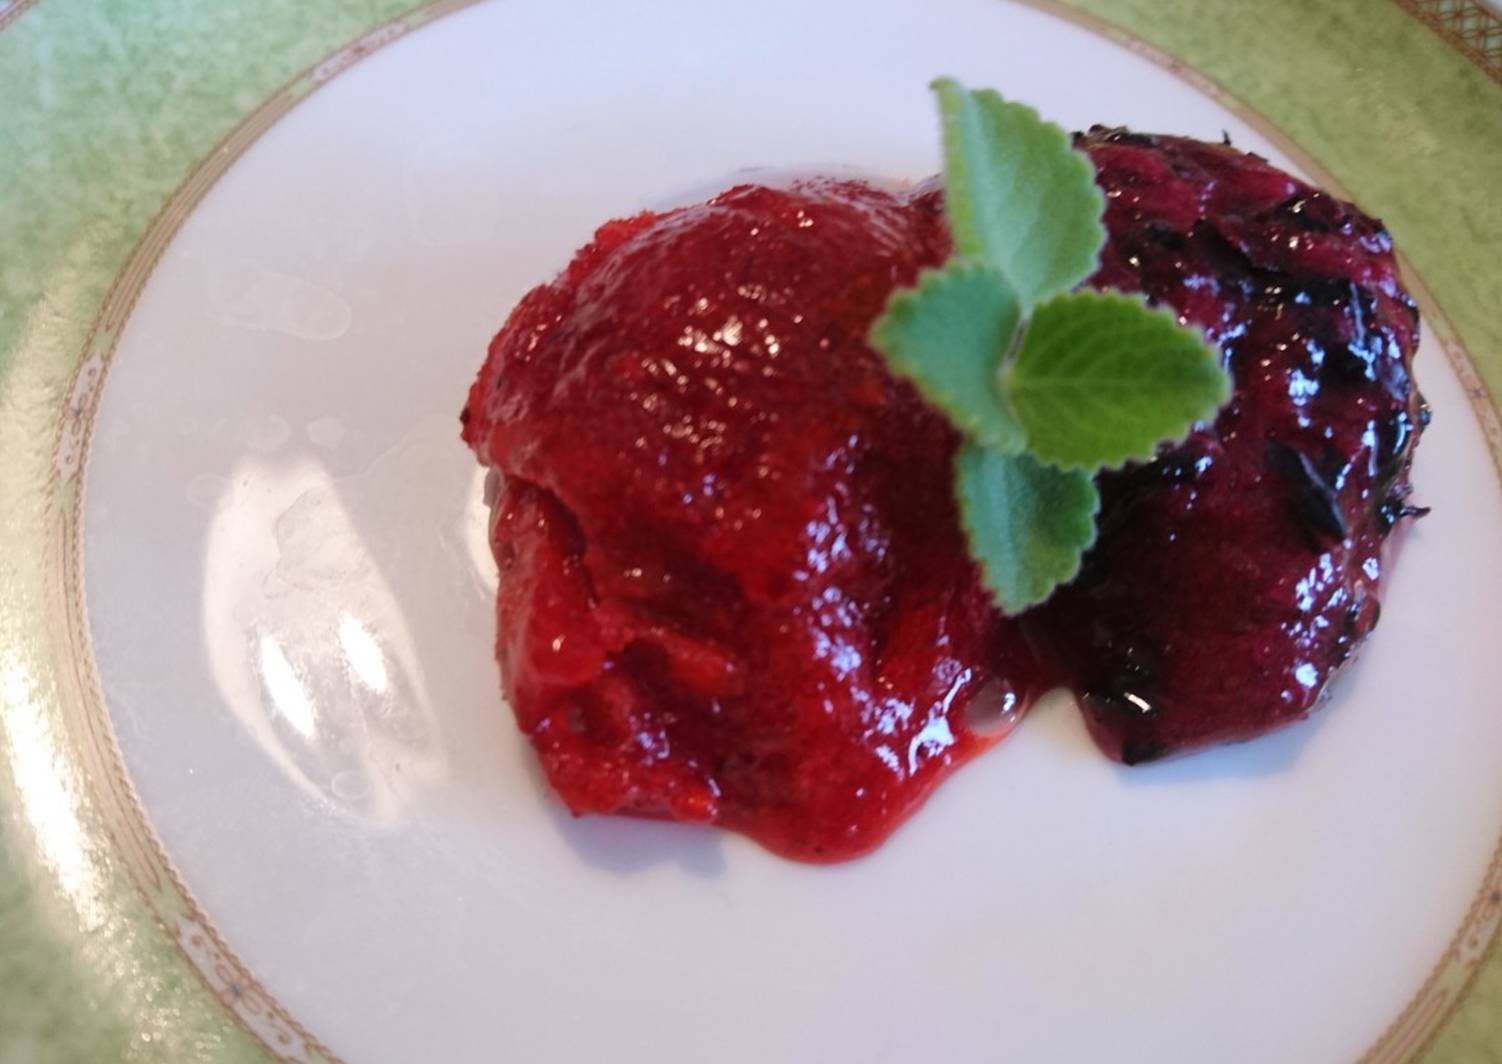 Пошаговый рецепт приготовления морса из красной и черной смородины